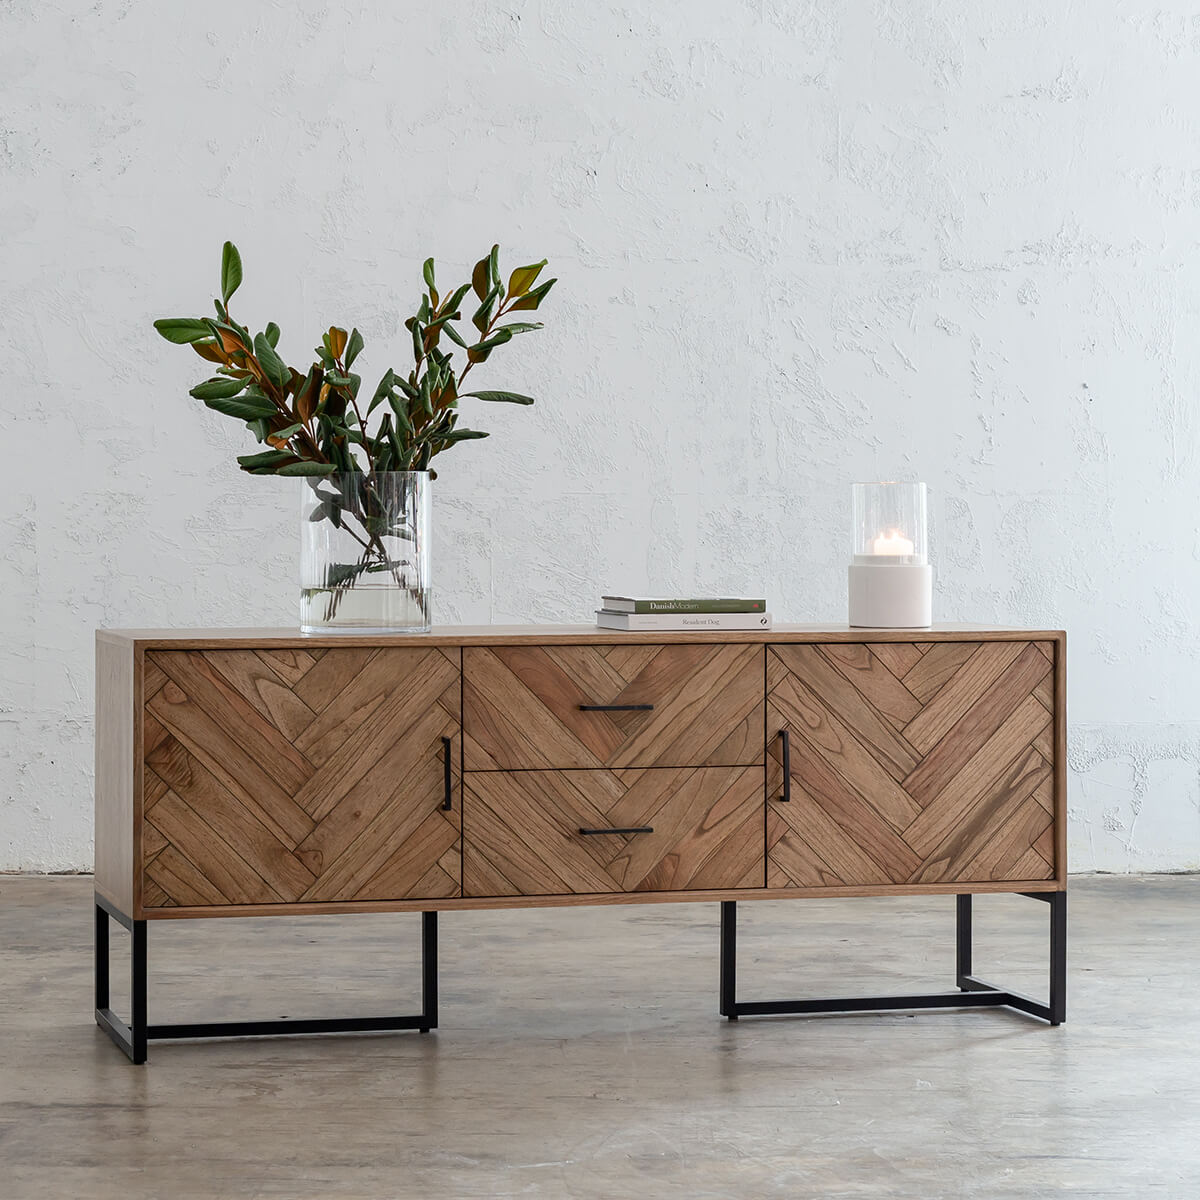 Find the perfect herringbone timber furniture